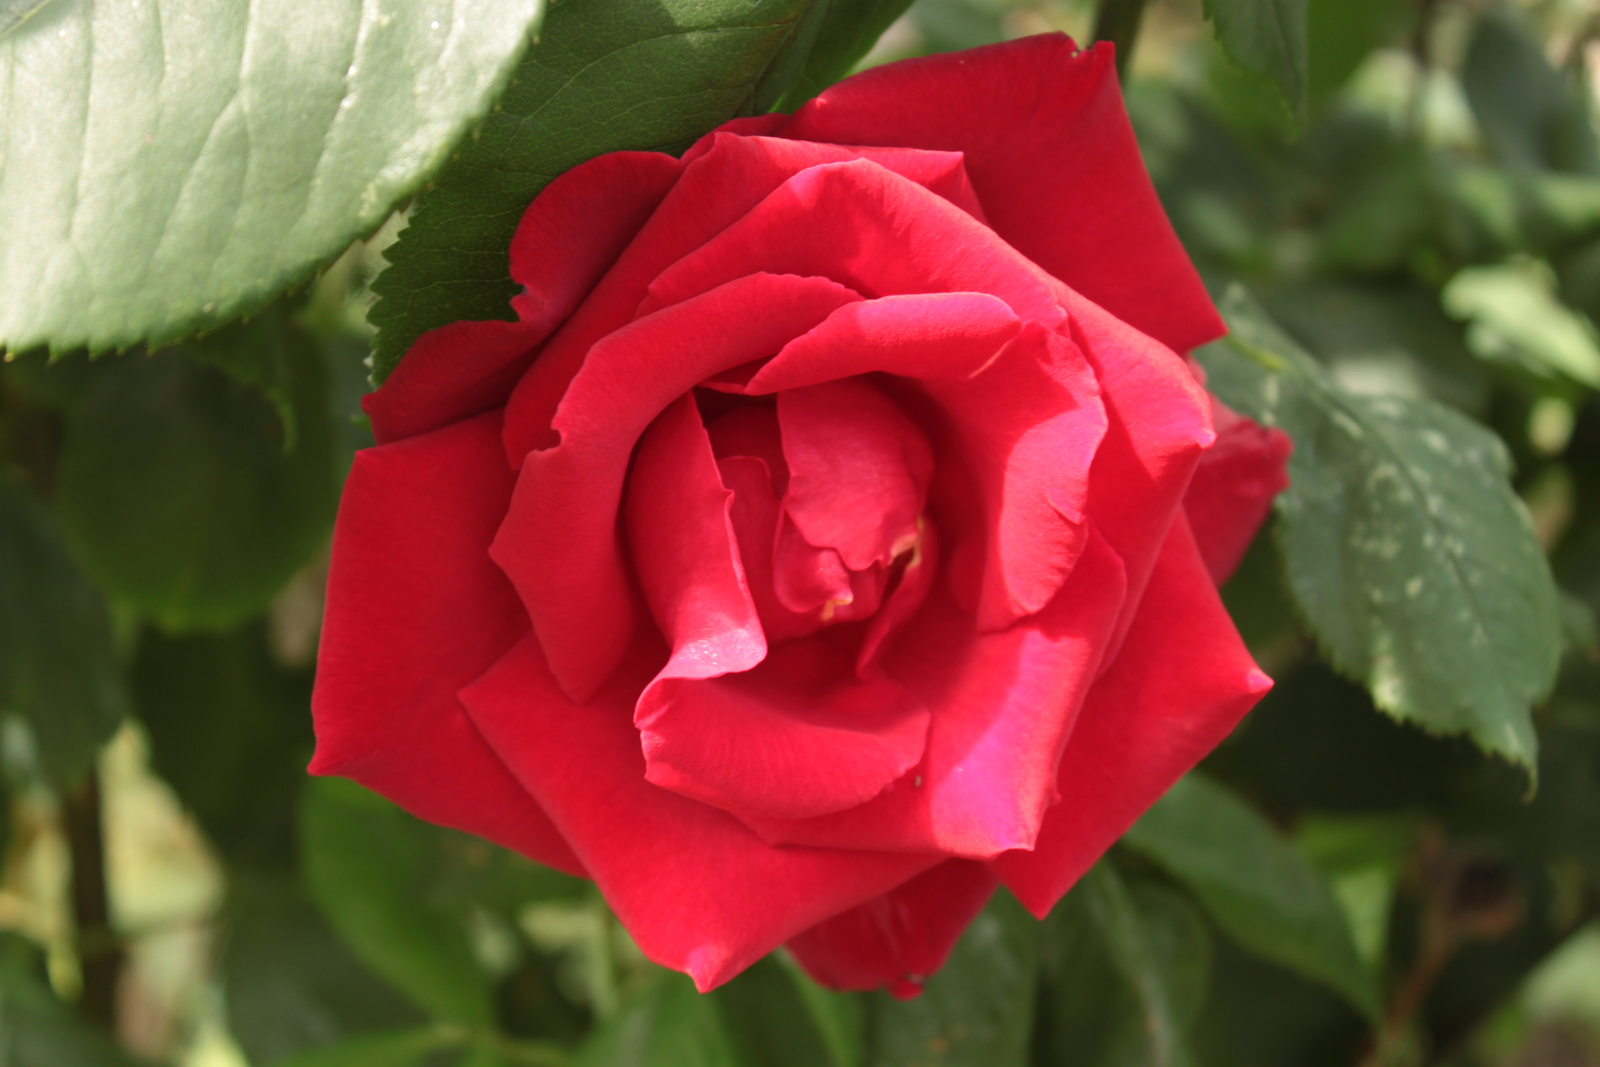 A vörös rózsám